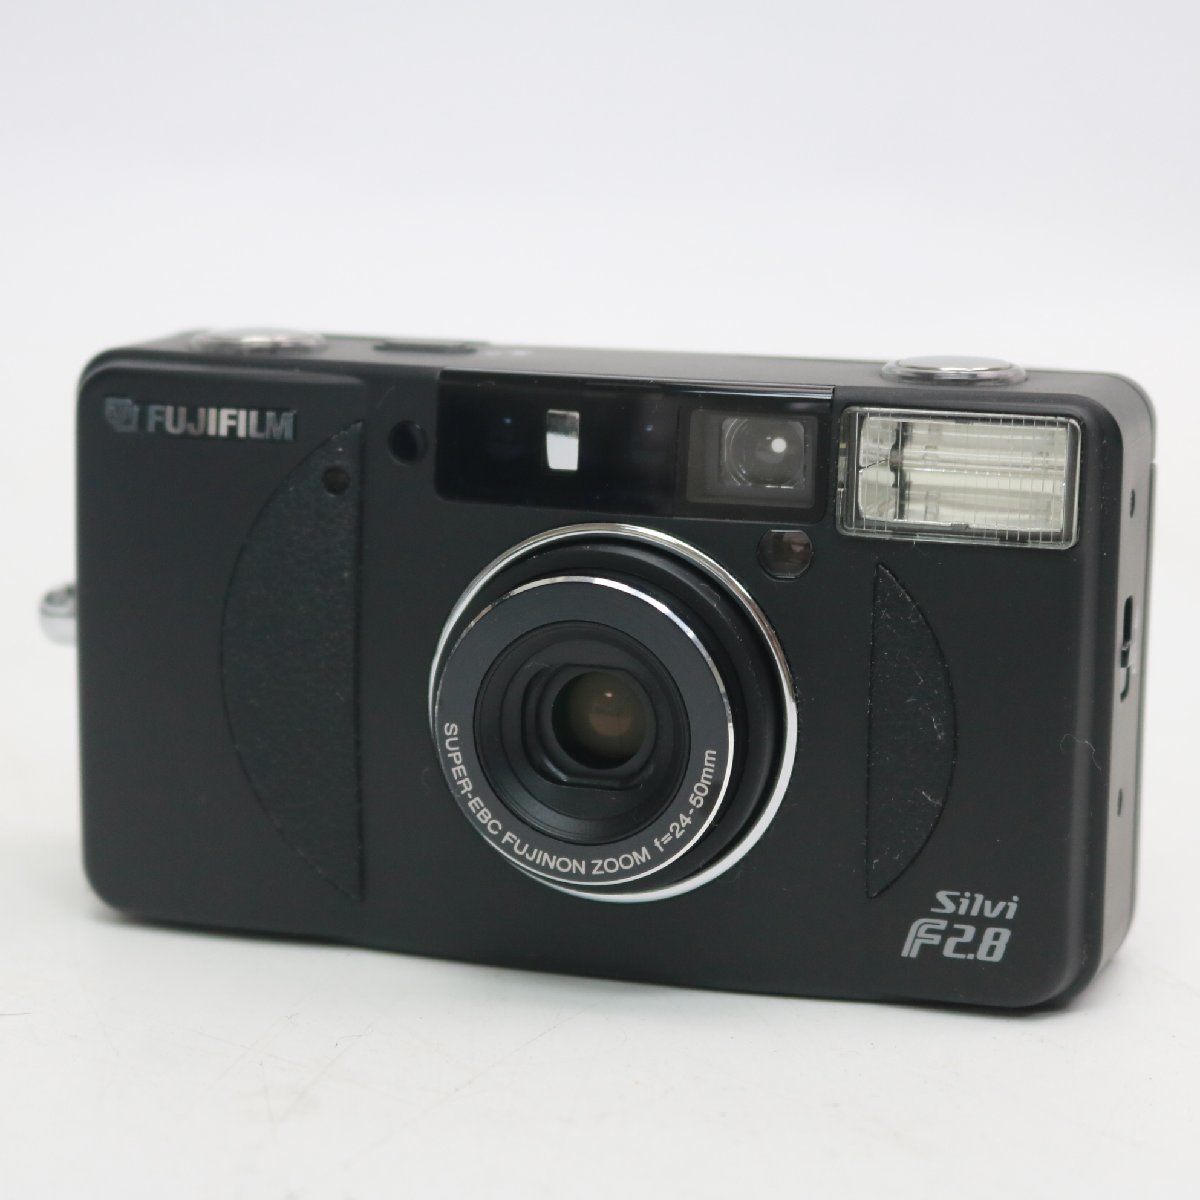 東京都品川区にて フジフィルム フィルムカメラ Silvi F2.8 SUPER-EBC FUJINON ZOOM 2  を出張買取させて頂きました。